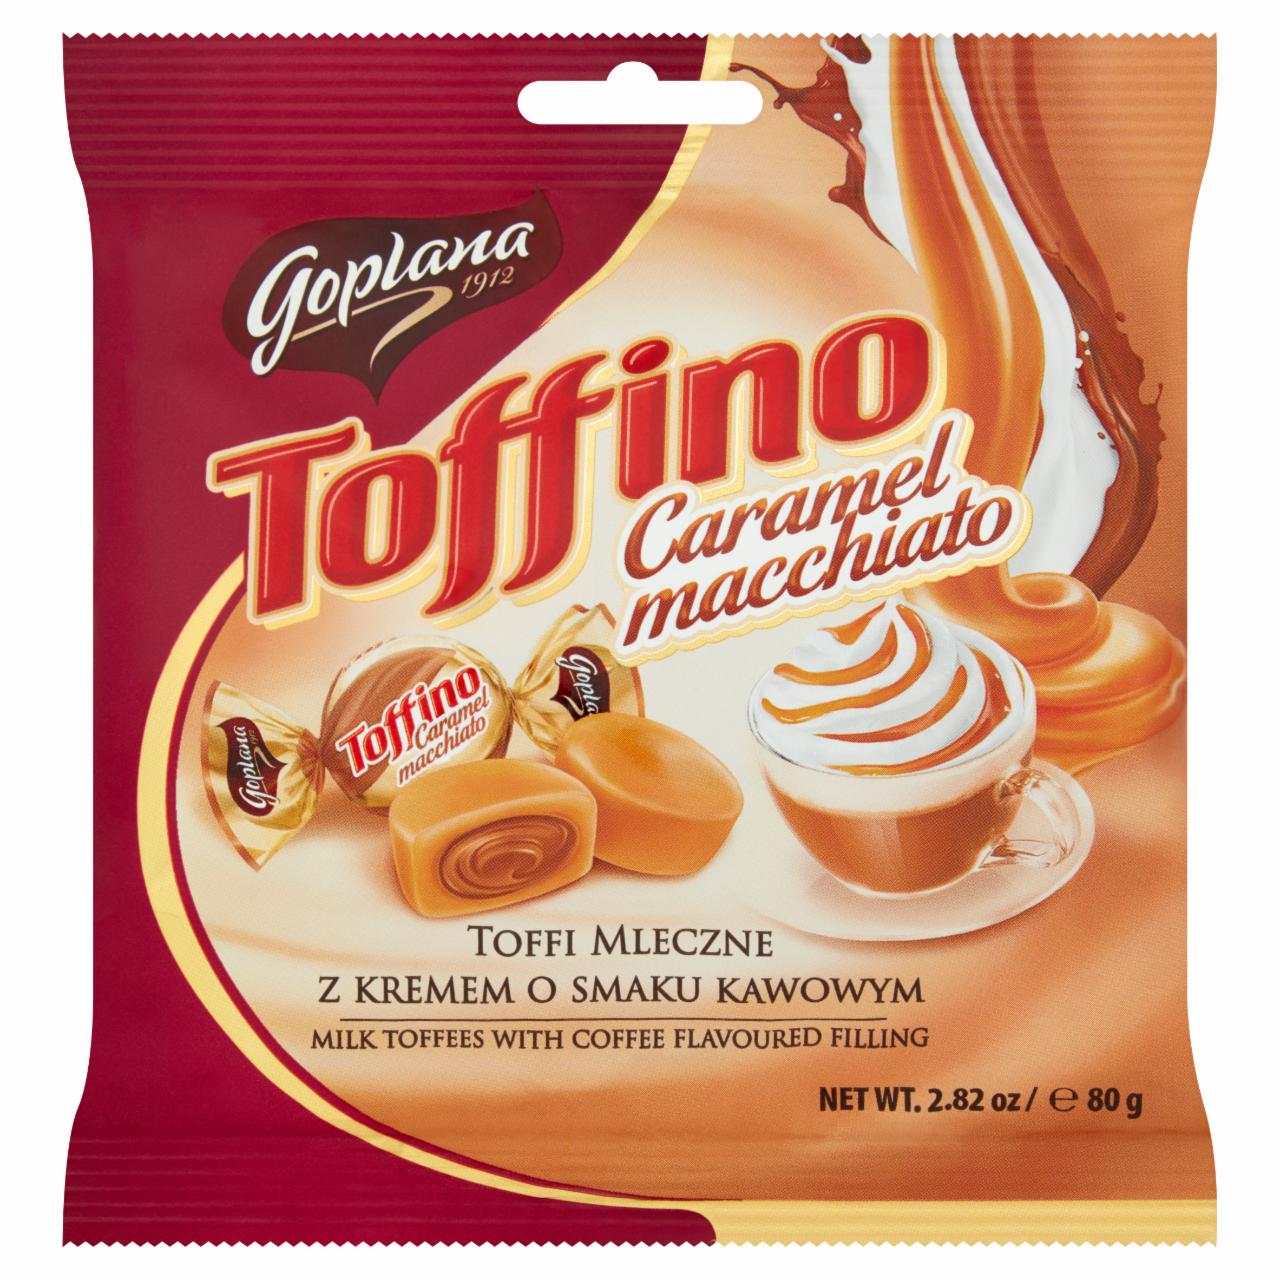 Zdjęcia - Goplana Toffino Caramel macchiato Toffi mleczne z kremem o smaku kawowym 80 g